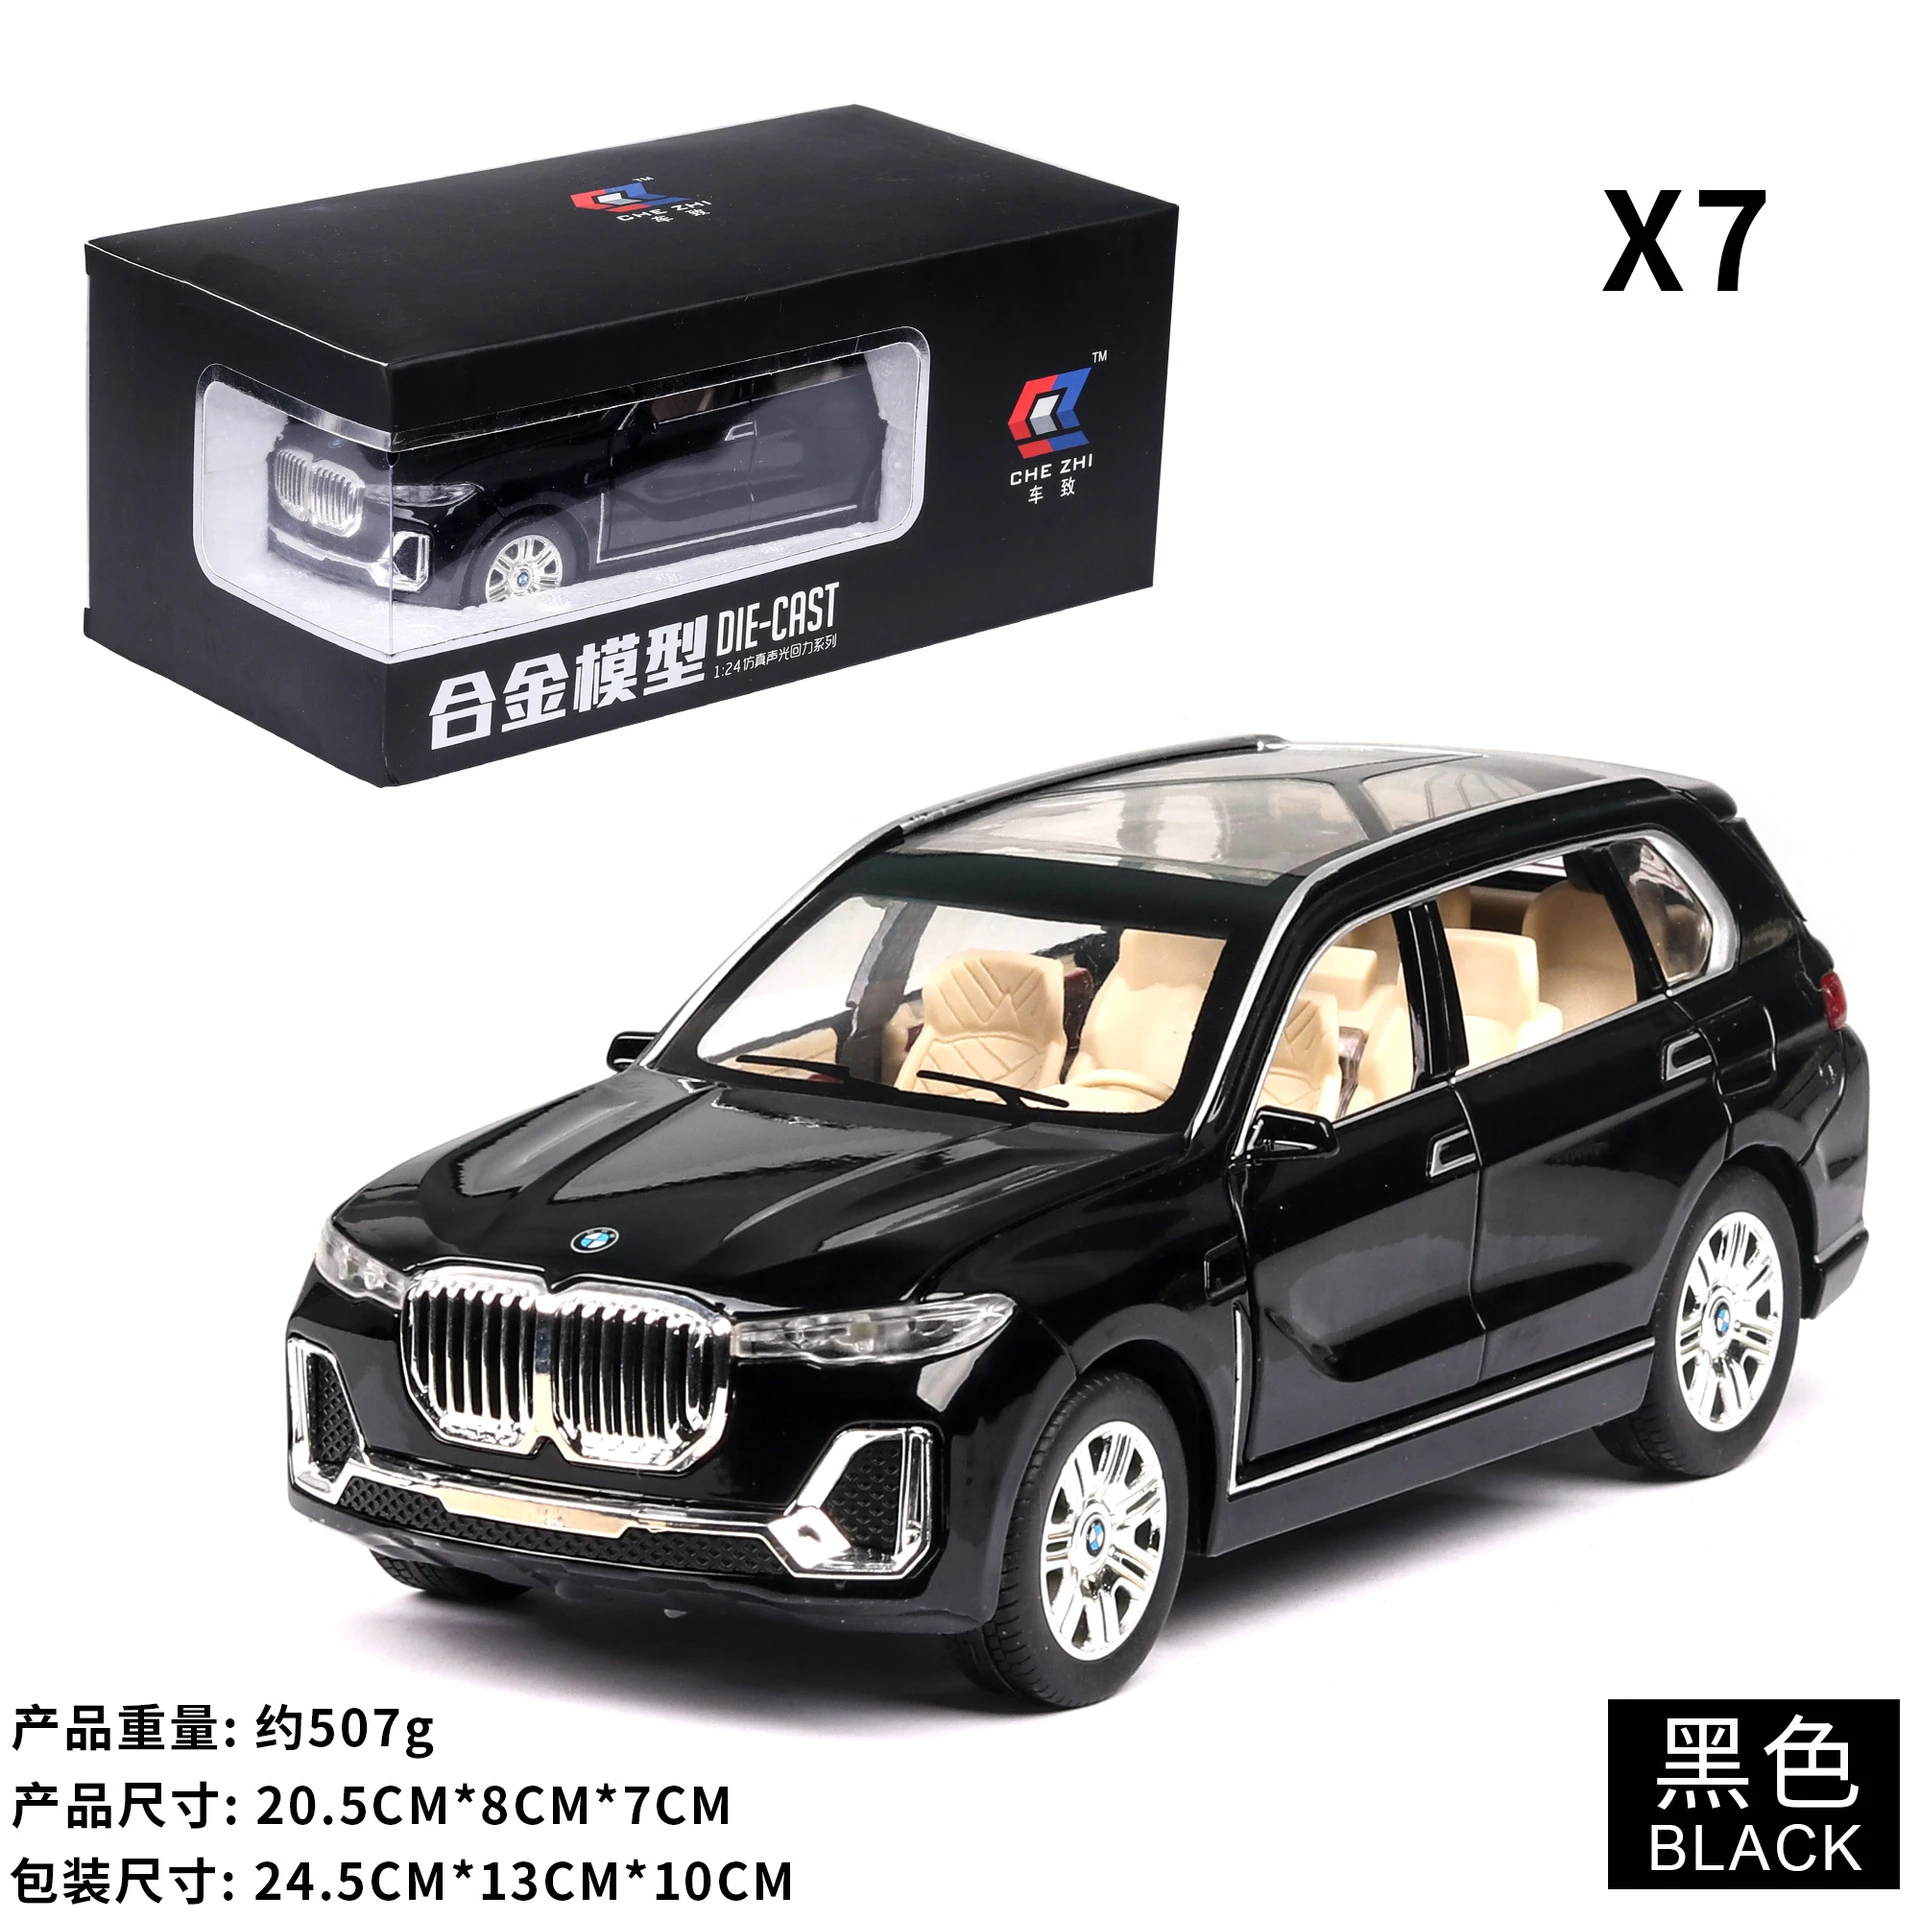 1:24 литая под давлением игрушечная модель автомобиля из сплава, имитация BM-X7, металлические двери автомобиля, открытая задняя подсветка, детские игрушки, коллекция машин, подарок для мальчика - Цвет: Black Toy Car